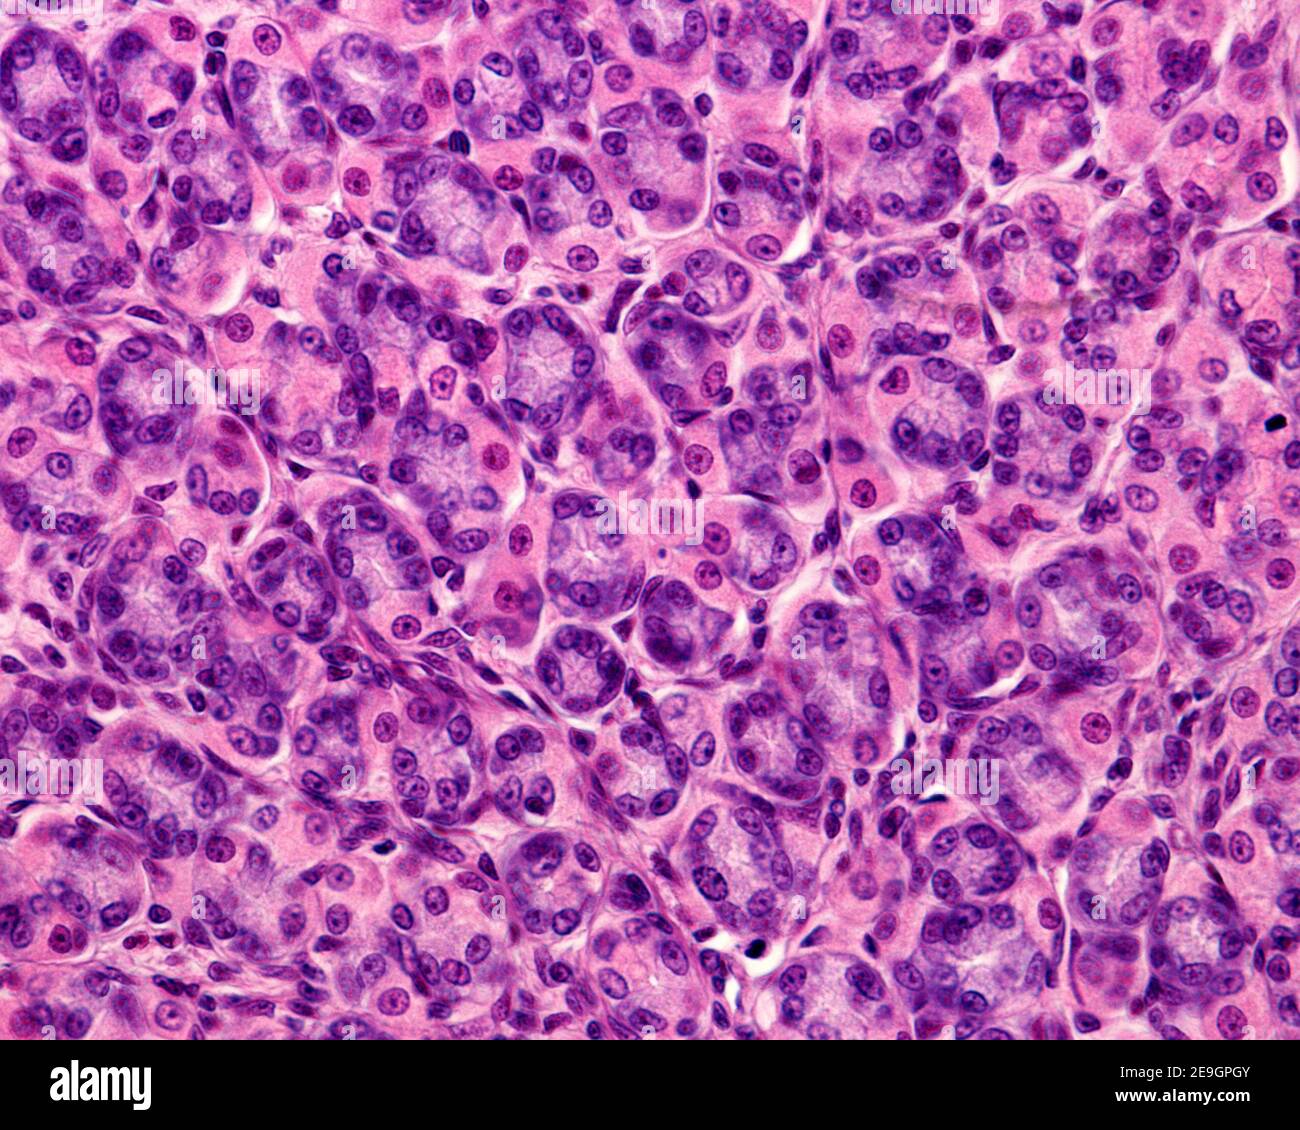 Die Magendrüsen im Querschnitt zeigen die Haupt- oder peptischen Zellen des Magens (bläuliches Zytoplasma) und die Parietalzellen (redisches Zytoplasma). Stockfoto